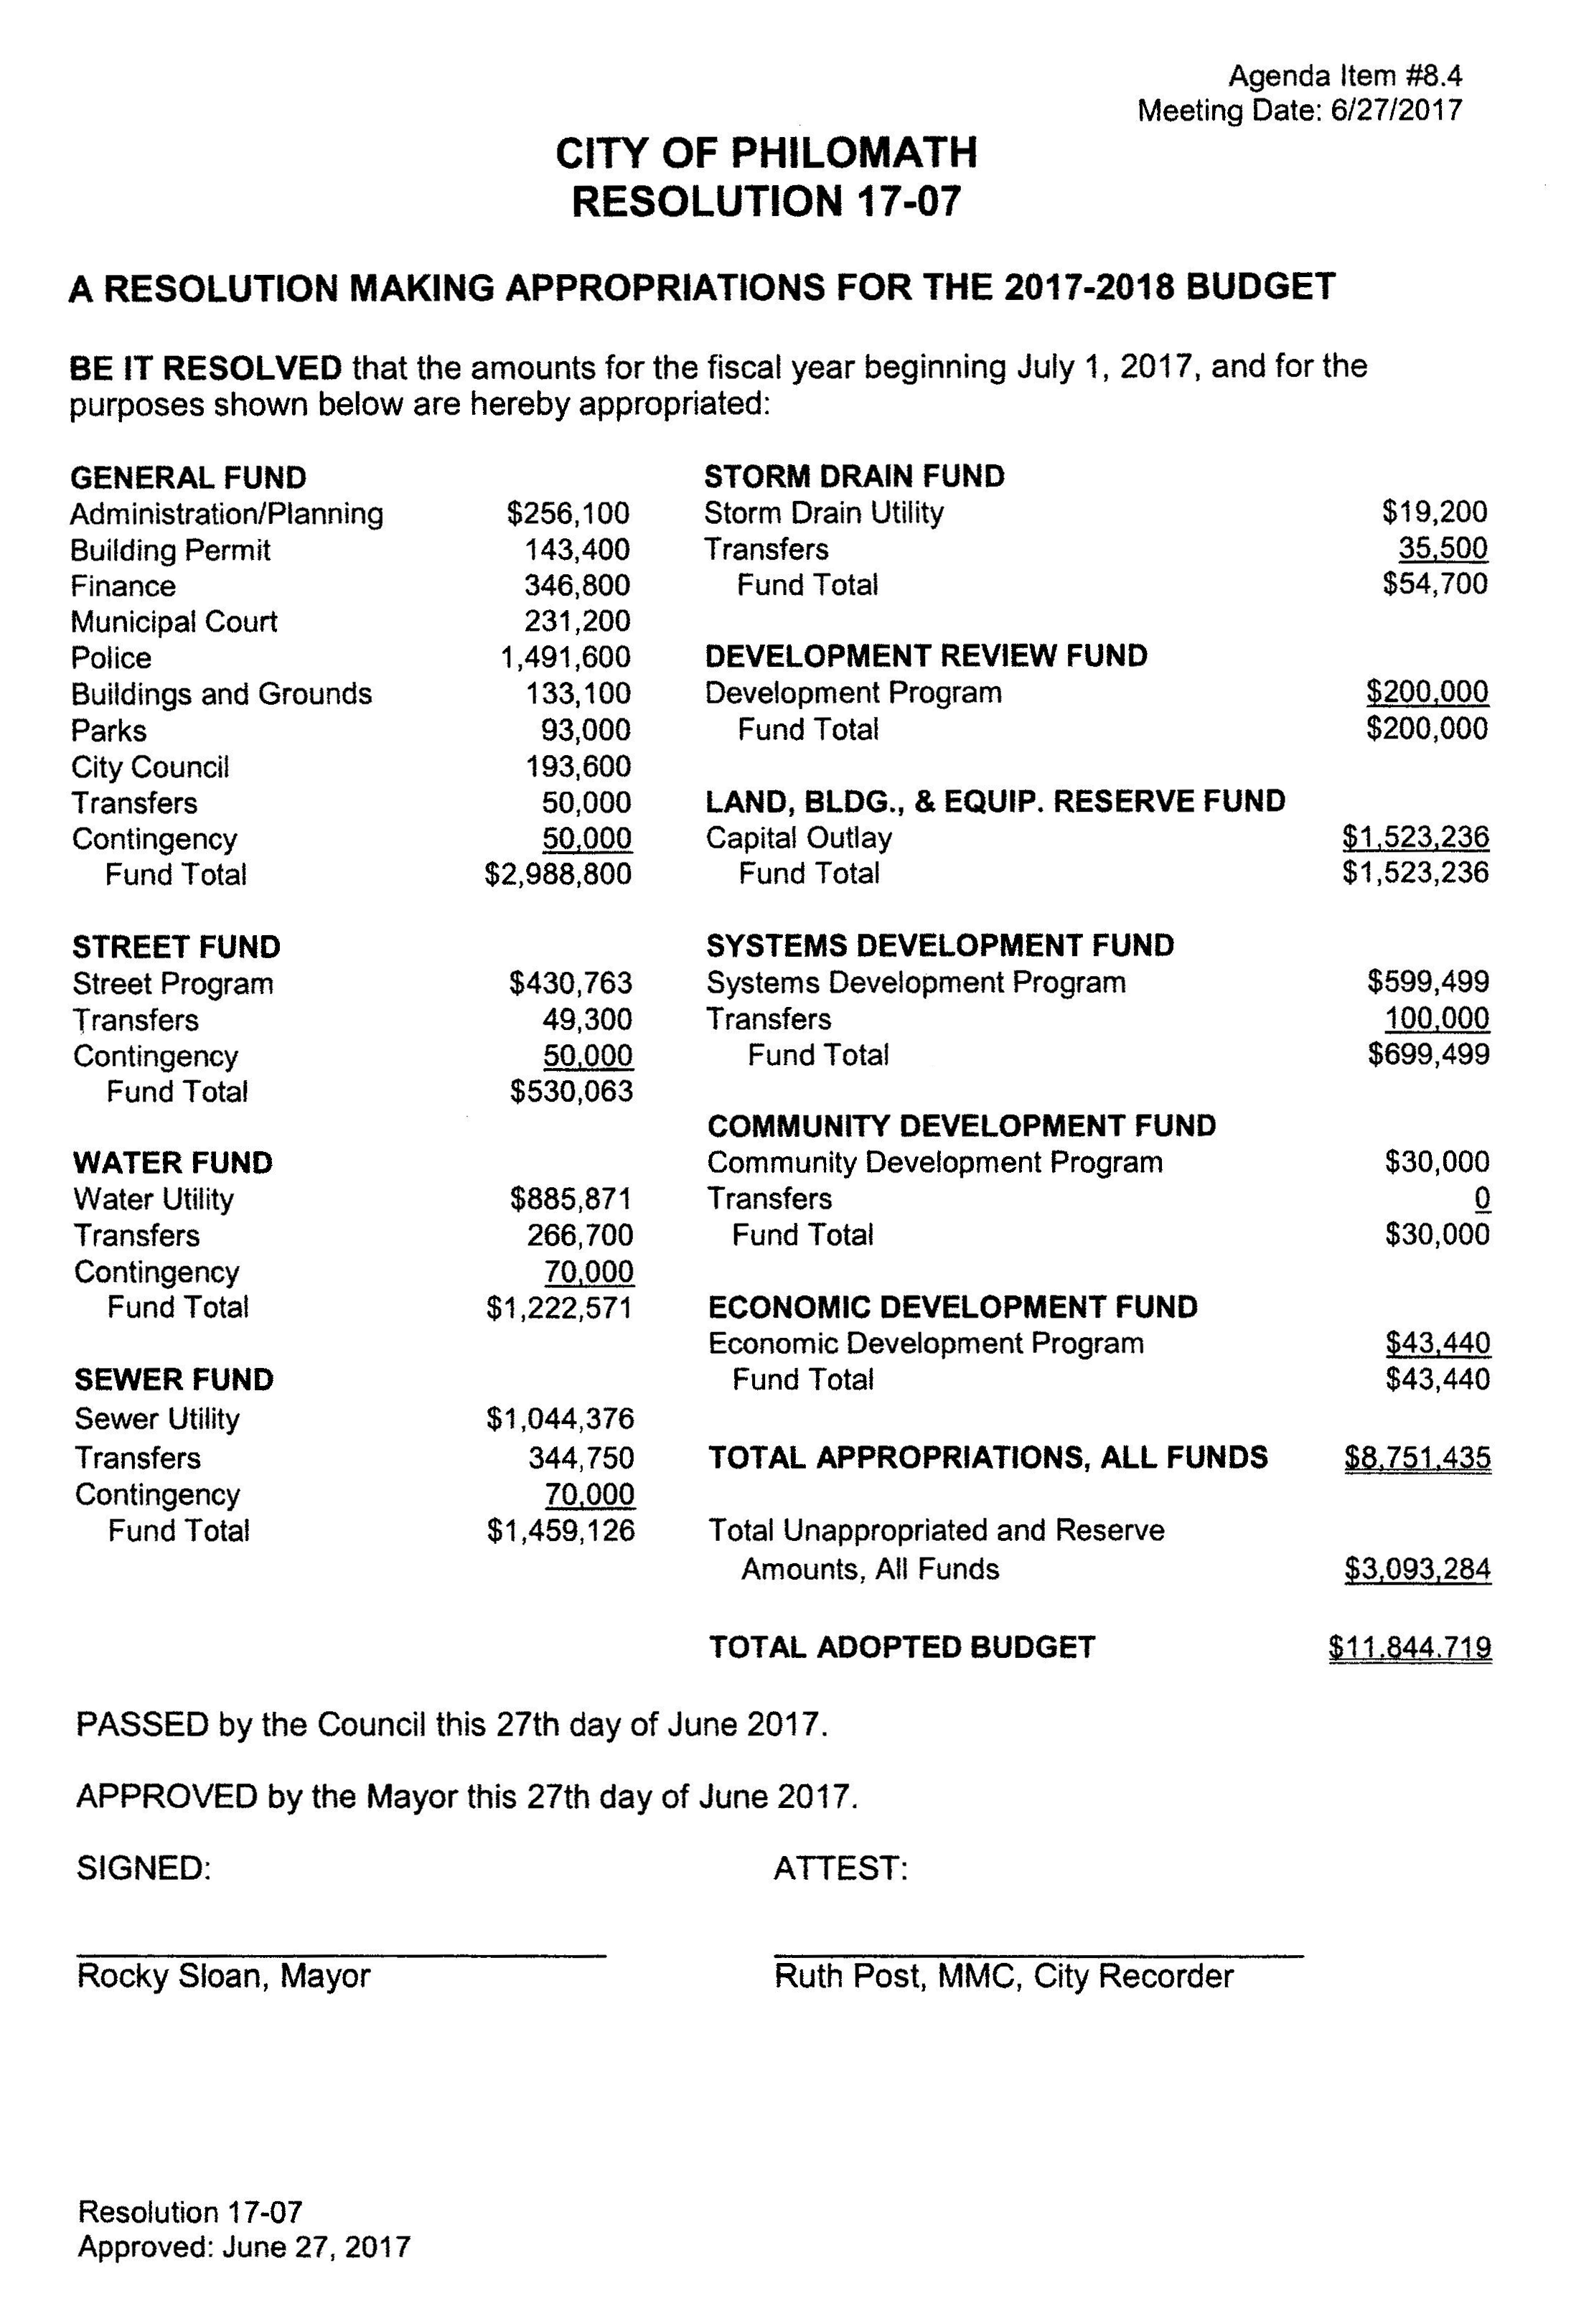 2017-18 Final Budget